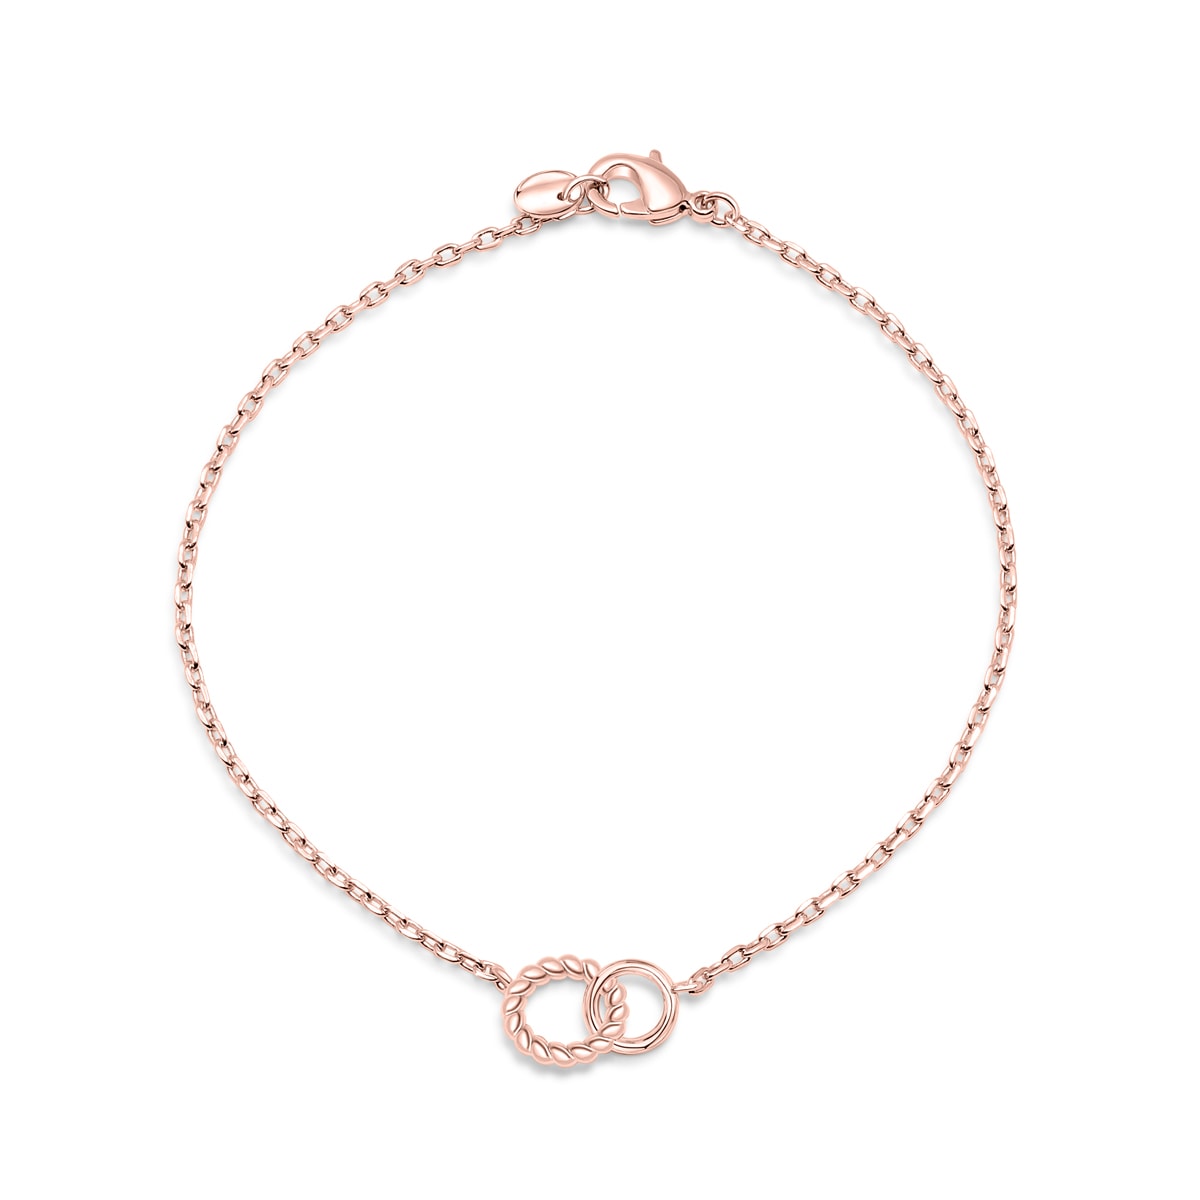 Rose gold chain link bracelet